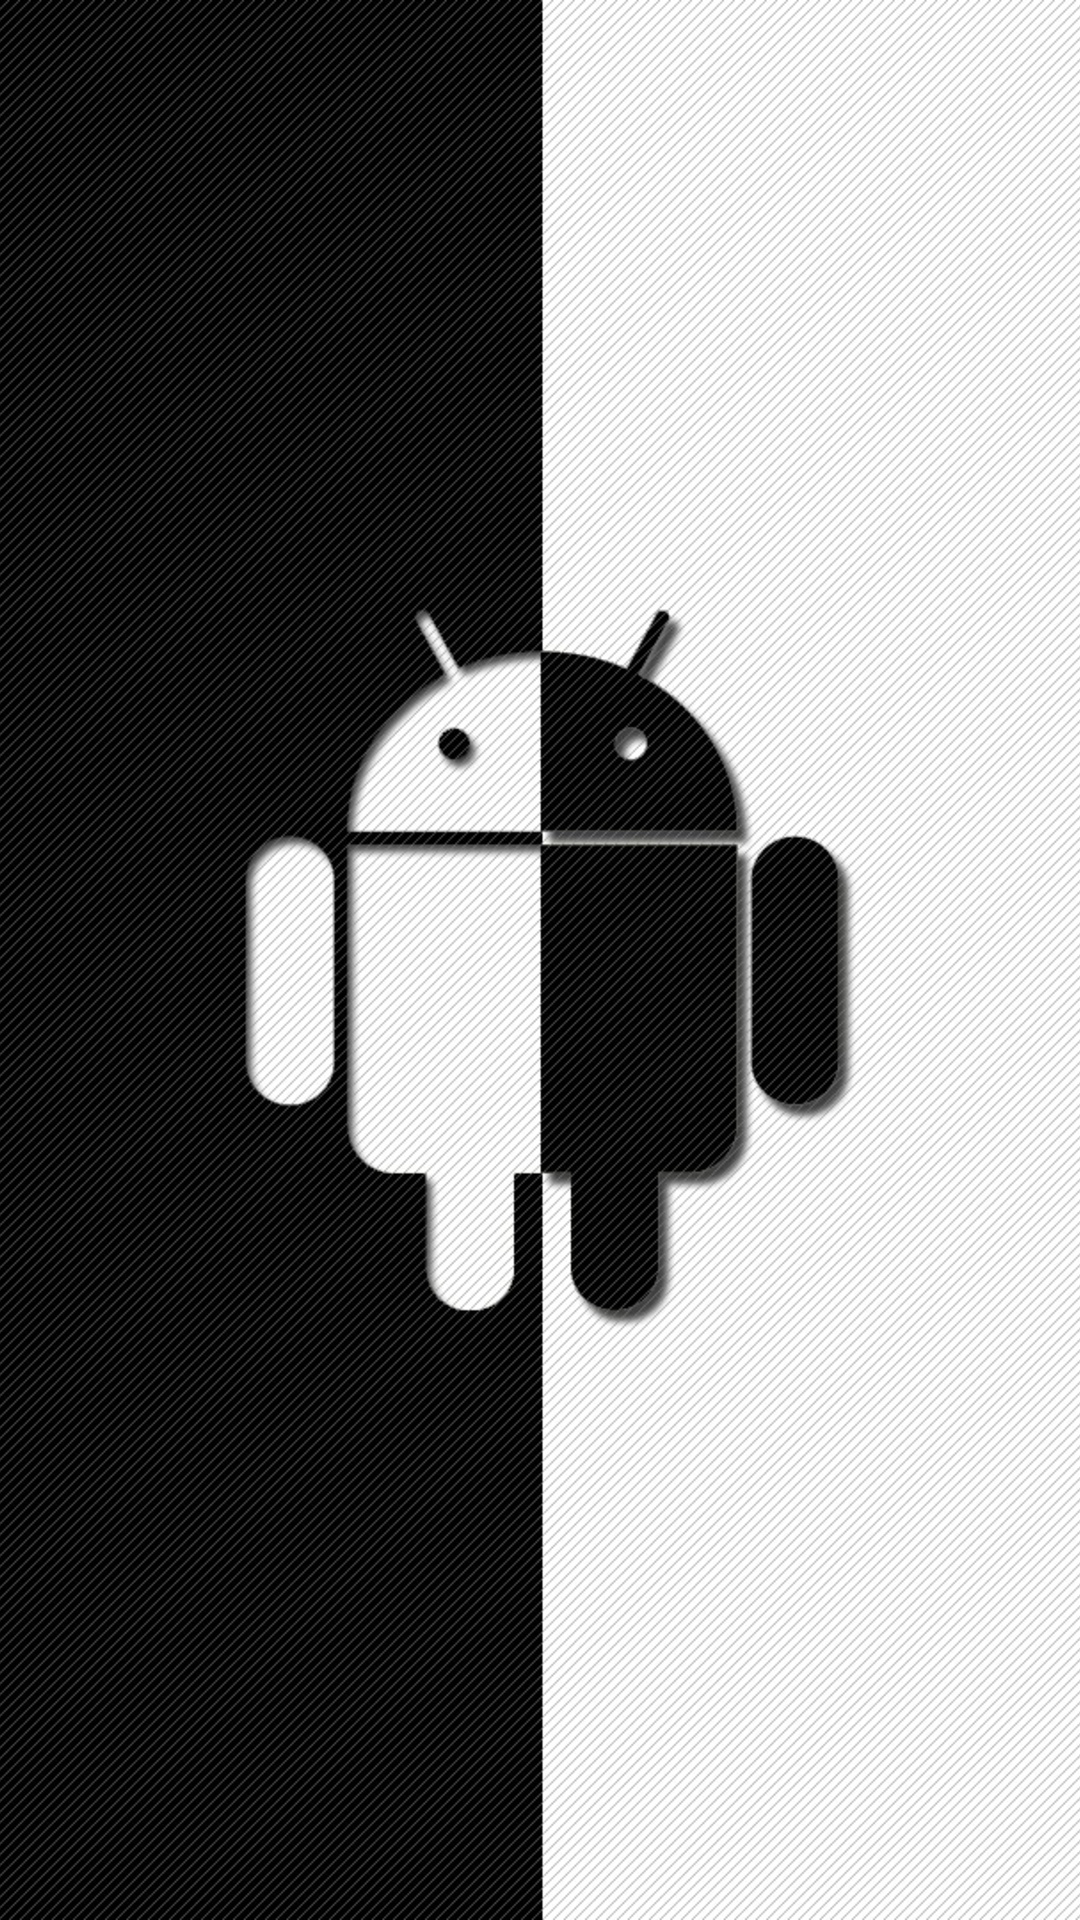 fond d'écran blanc hd pour android,illustration,t shirt,la technologie,robot,police de caractère